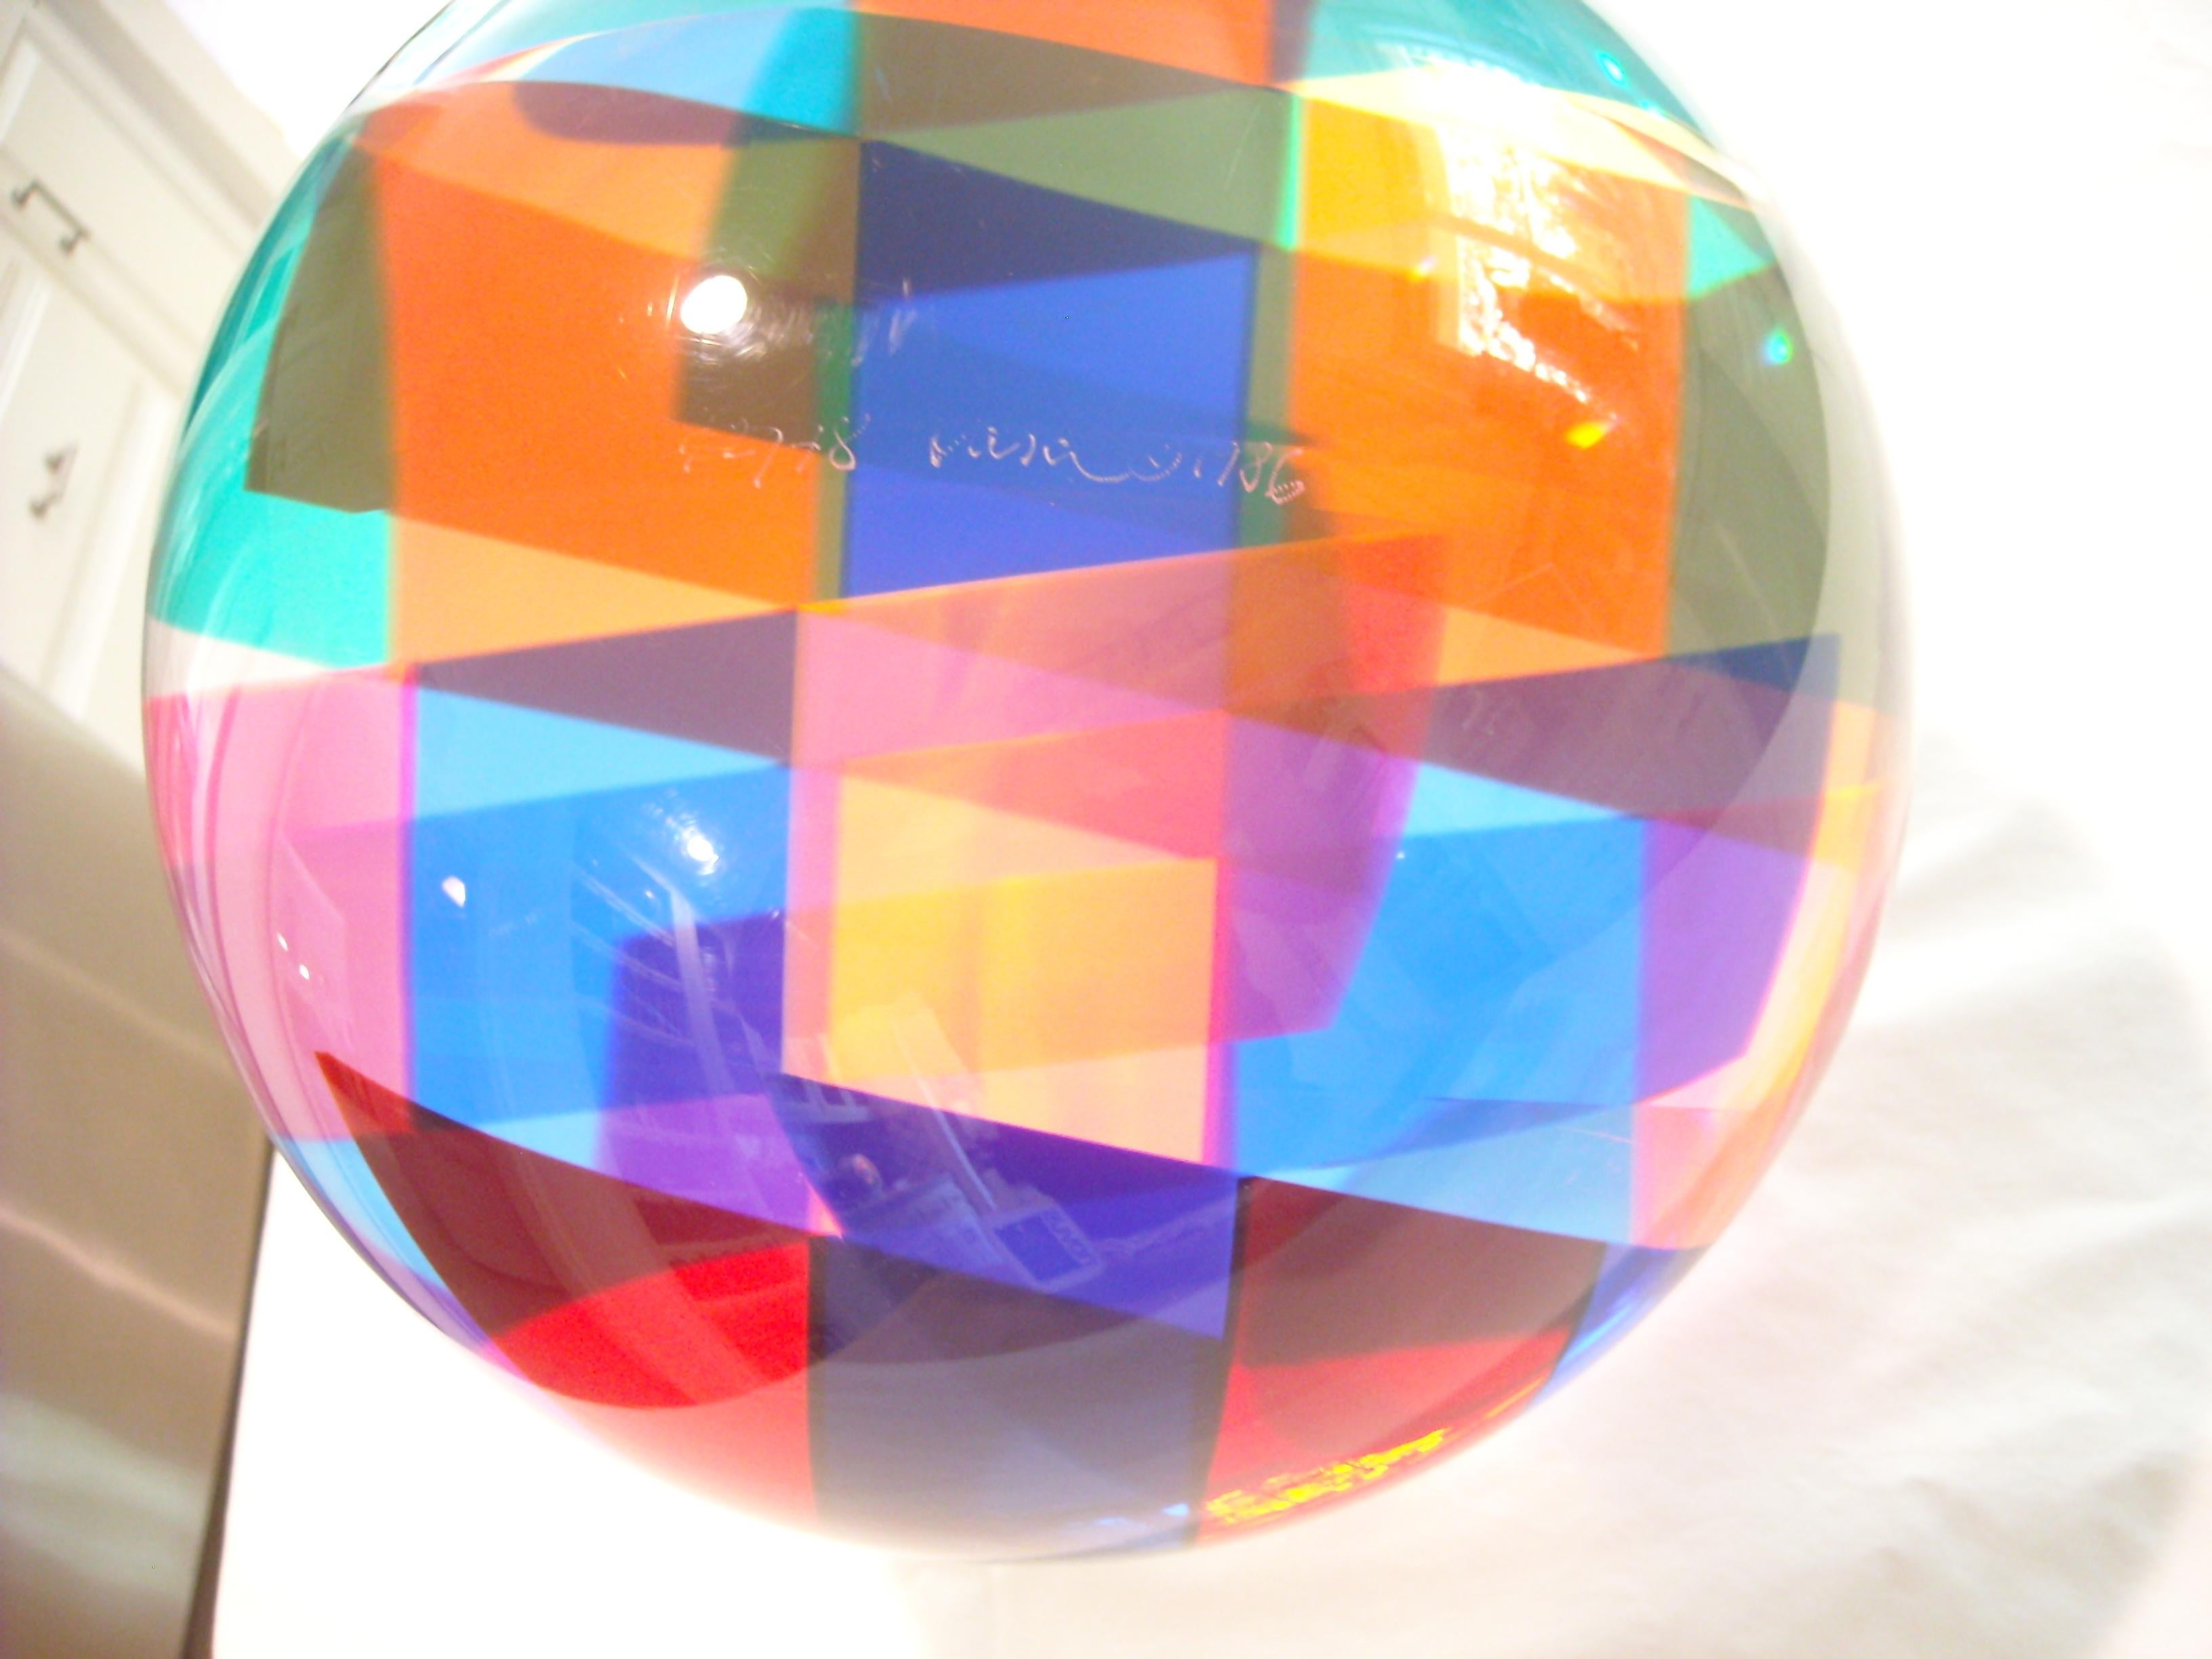 acrylic sphere